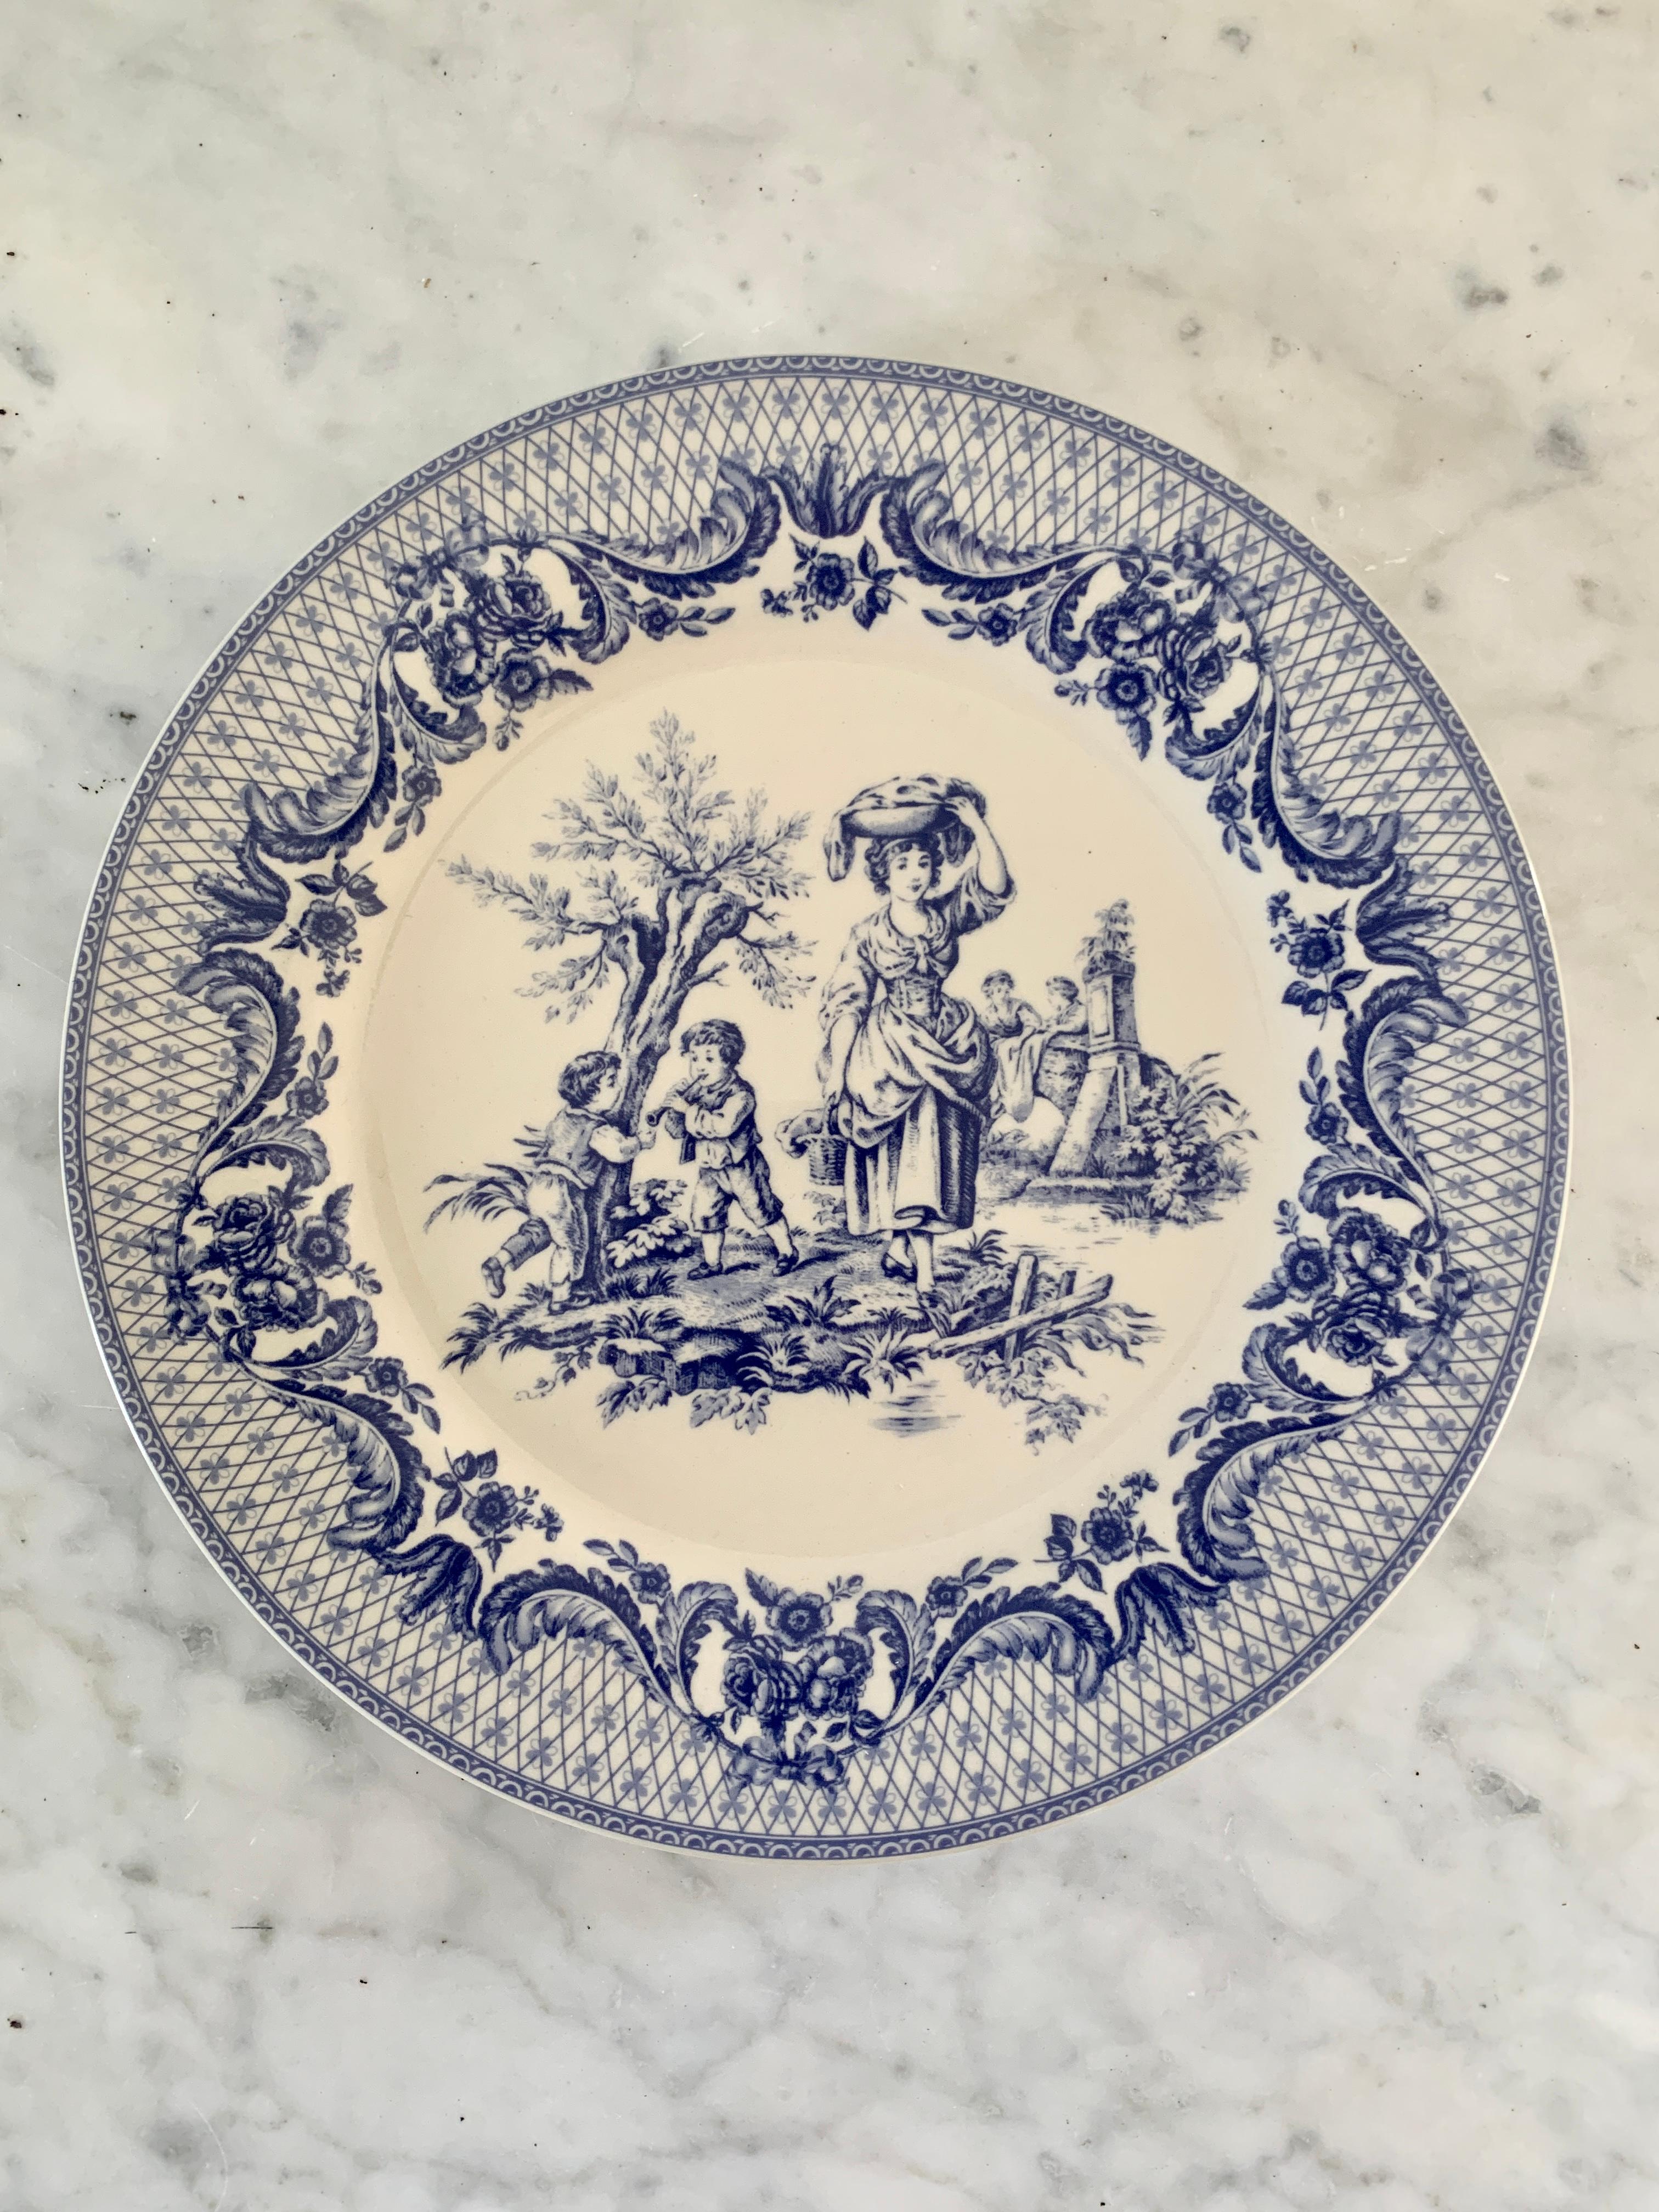 Un ensemble de trois belles assiettes en porcelaine bleue et blanche de style néoclassique représentant des scènes pastorales, parfaites pour être utilisées à table ou accrochées au mur.

États-Unis, fin du 20e siècle

Mesures : 8 